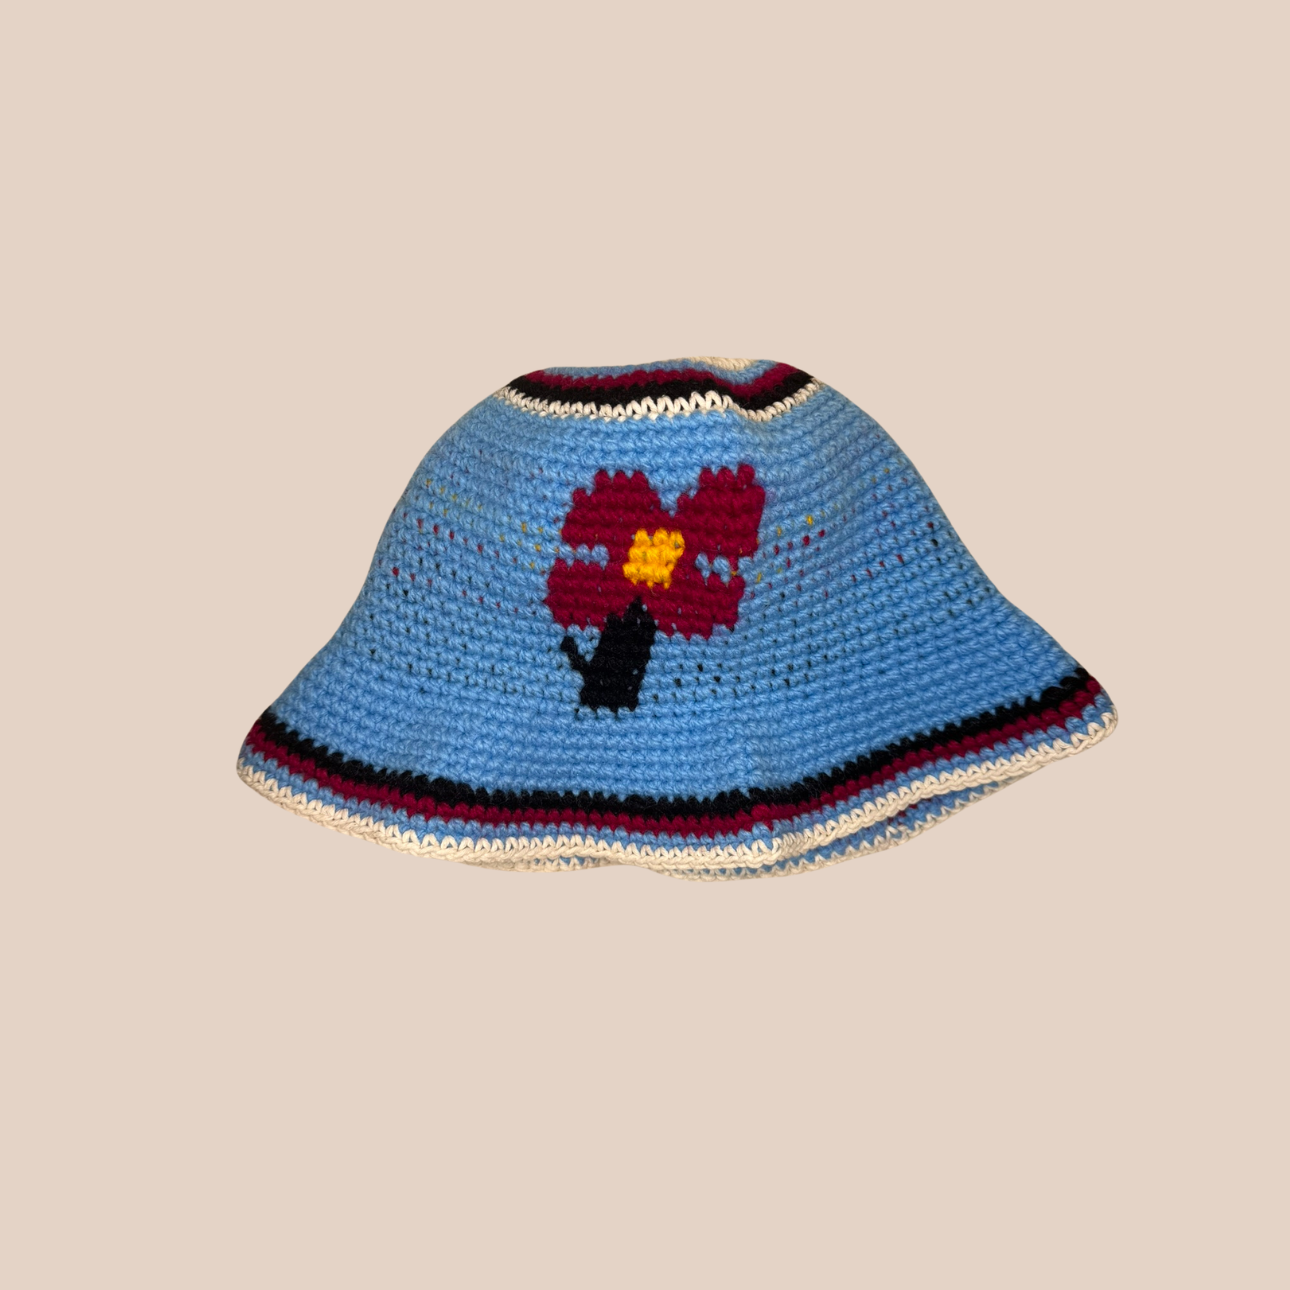 Image du bucket hat motif fleurs de Maison Badigo, bucket hat (bob) en crochet bleu unique et tendance